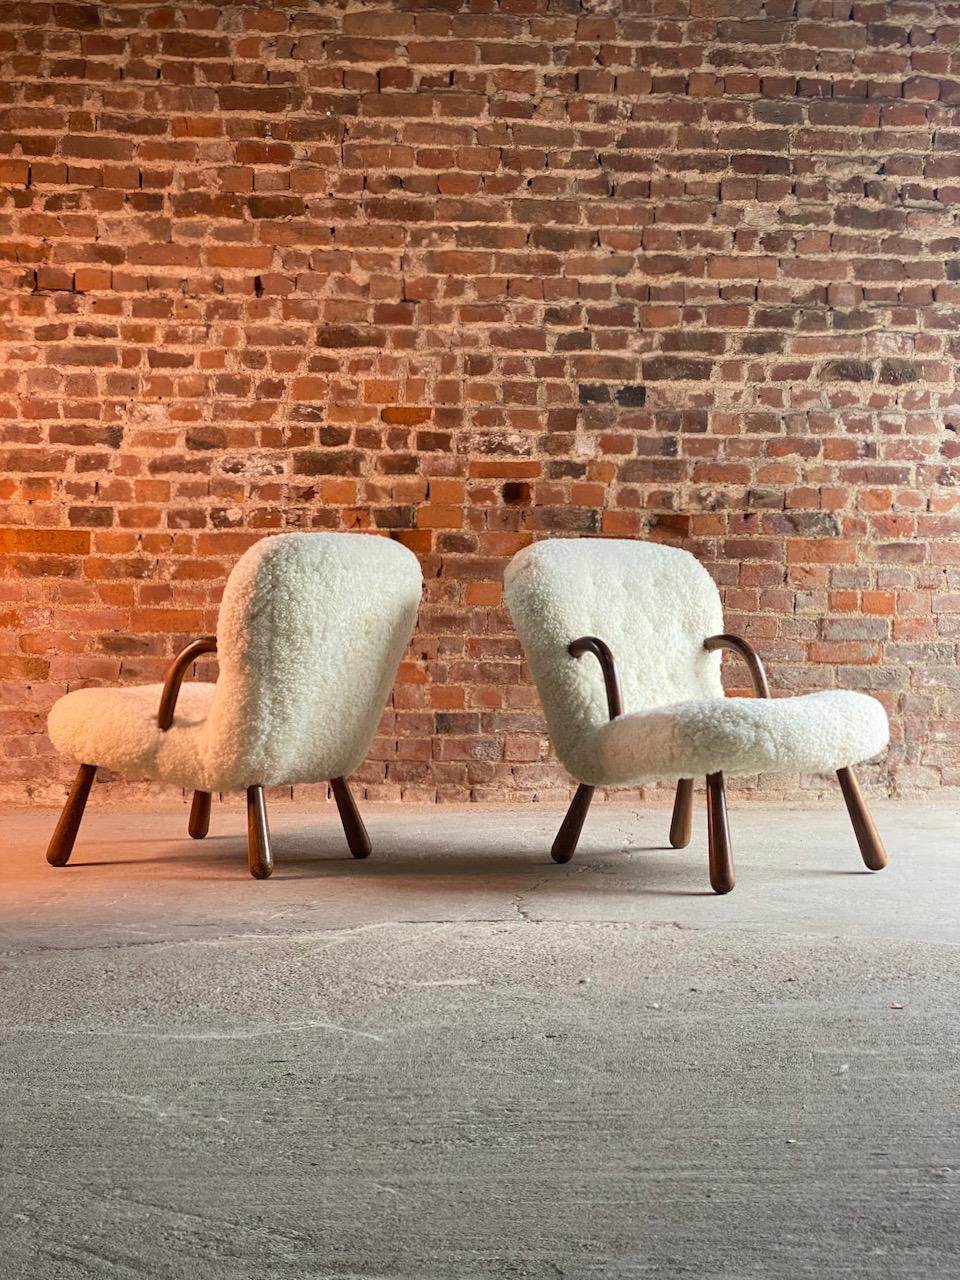 Pair of Philip Arctander ‘Muslingestole’ Clam chairs 

Magnificent pair of Philip Arctander “Muslingestole